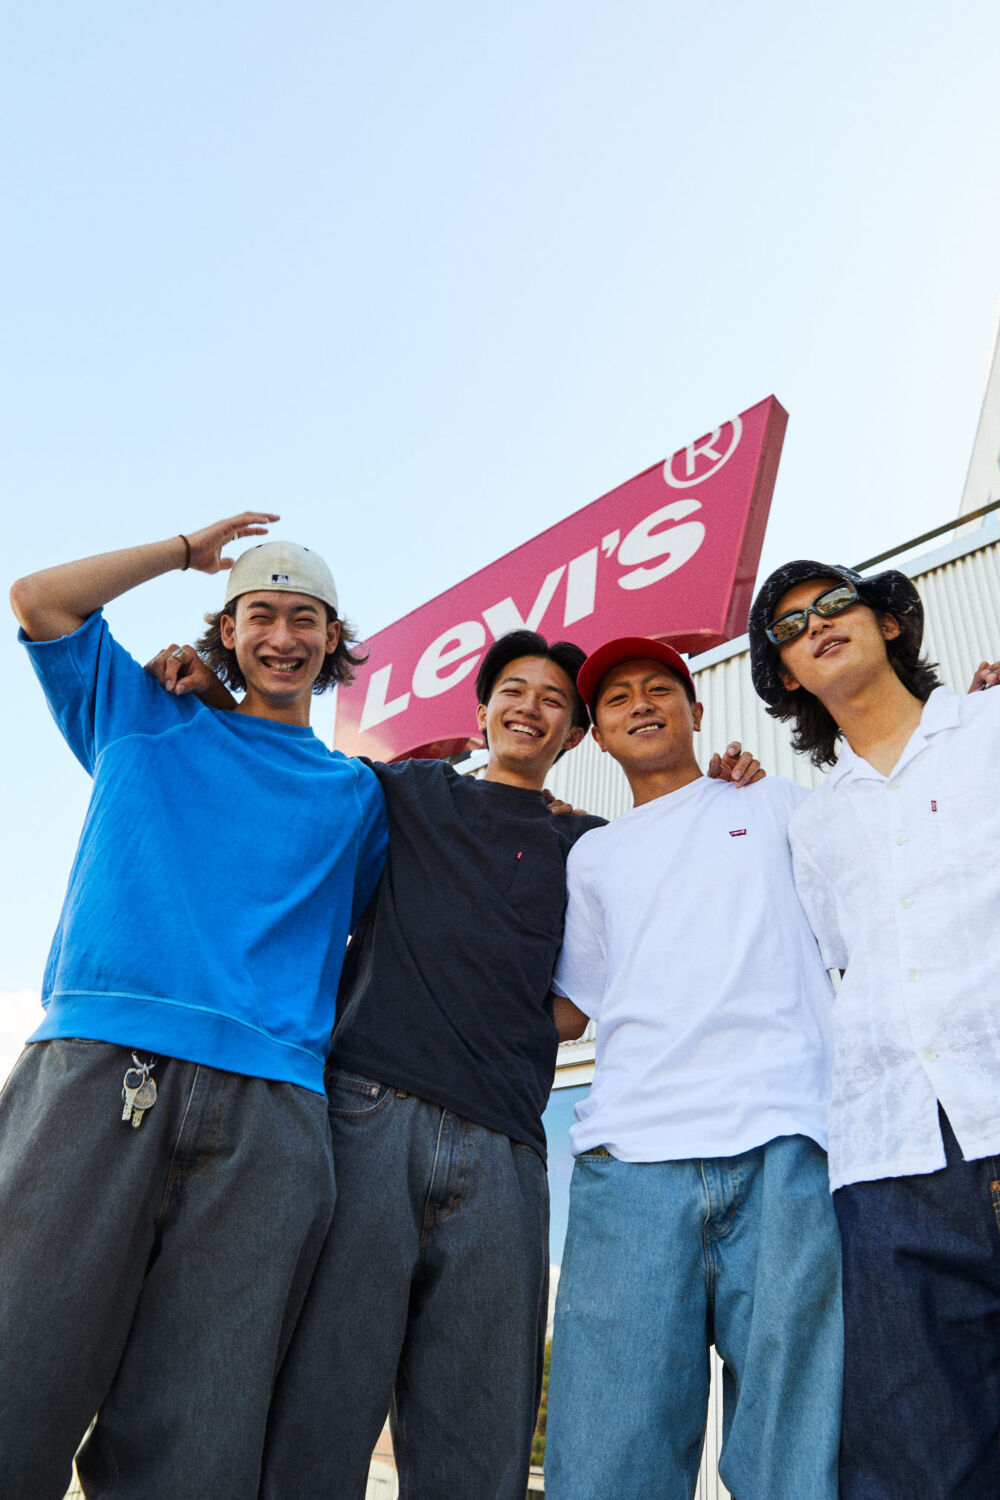 名作501®︎の150周年を記念した<br>気鋭スケートクルーの上映会は<br>カルチャーの未来を映す1日を<br>-LEVI’S®PREMIERE&PARTY<br>WITH FERRIS TOKYO-